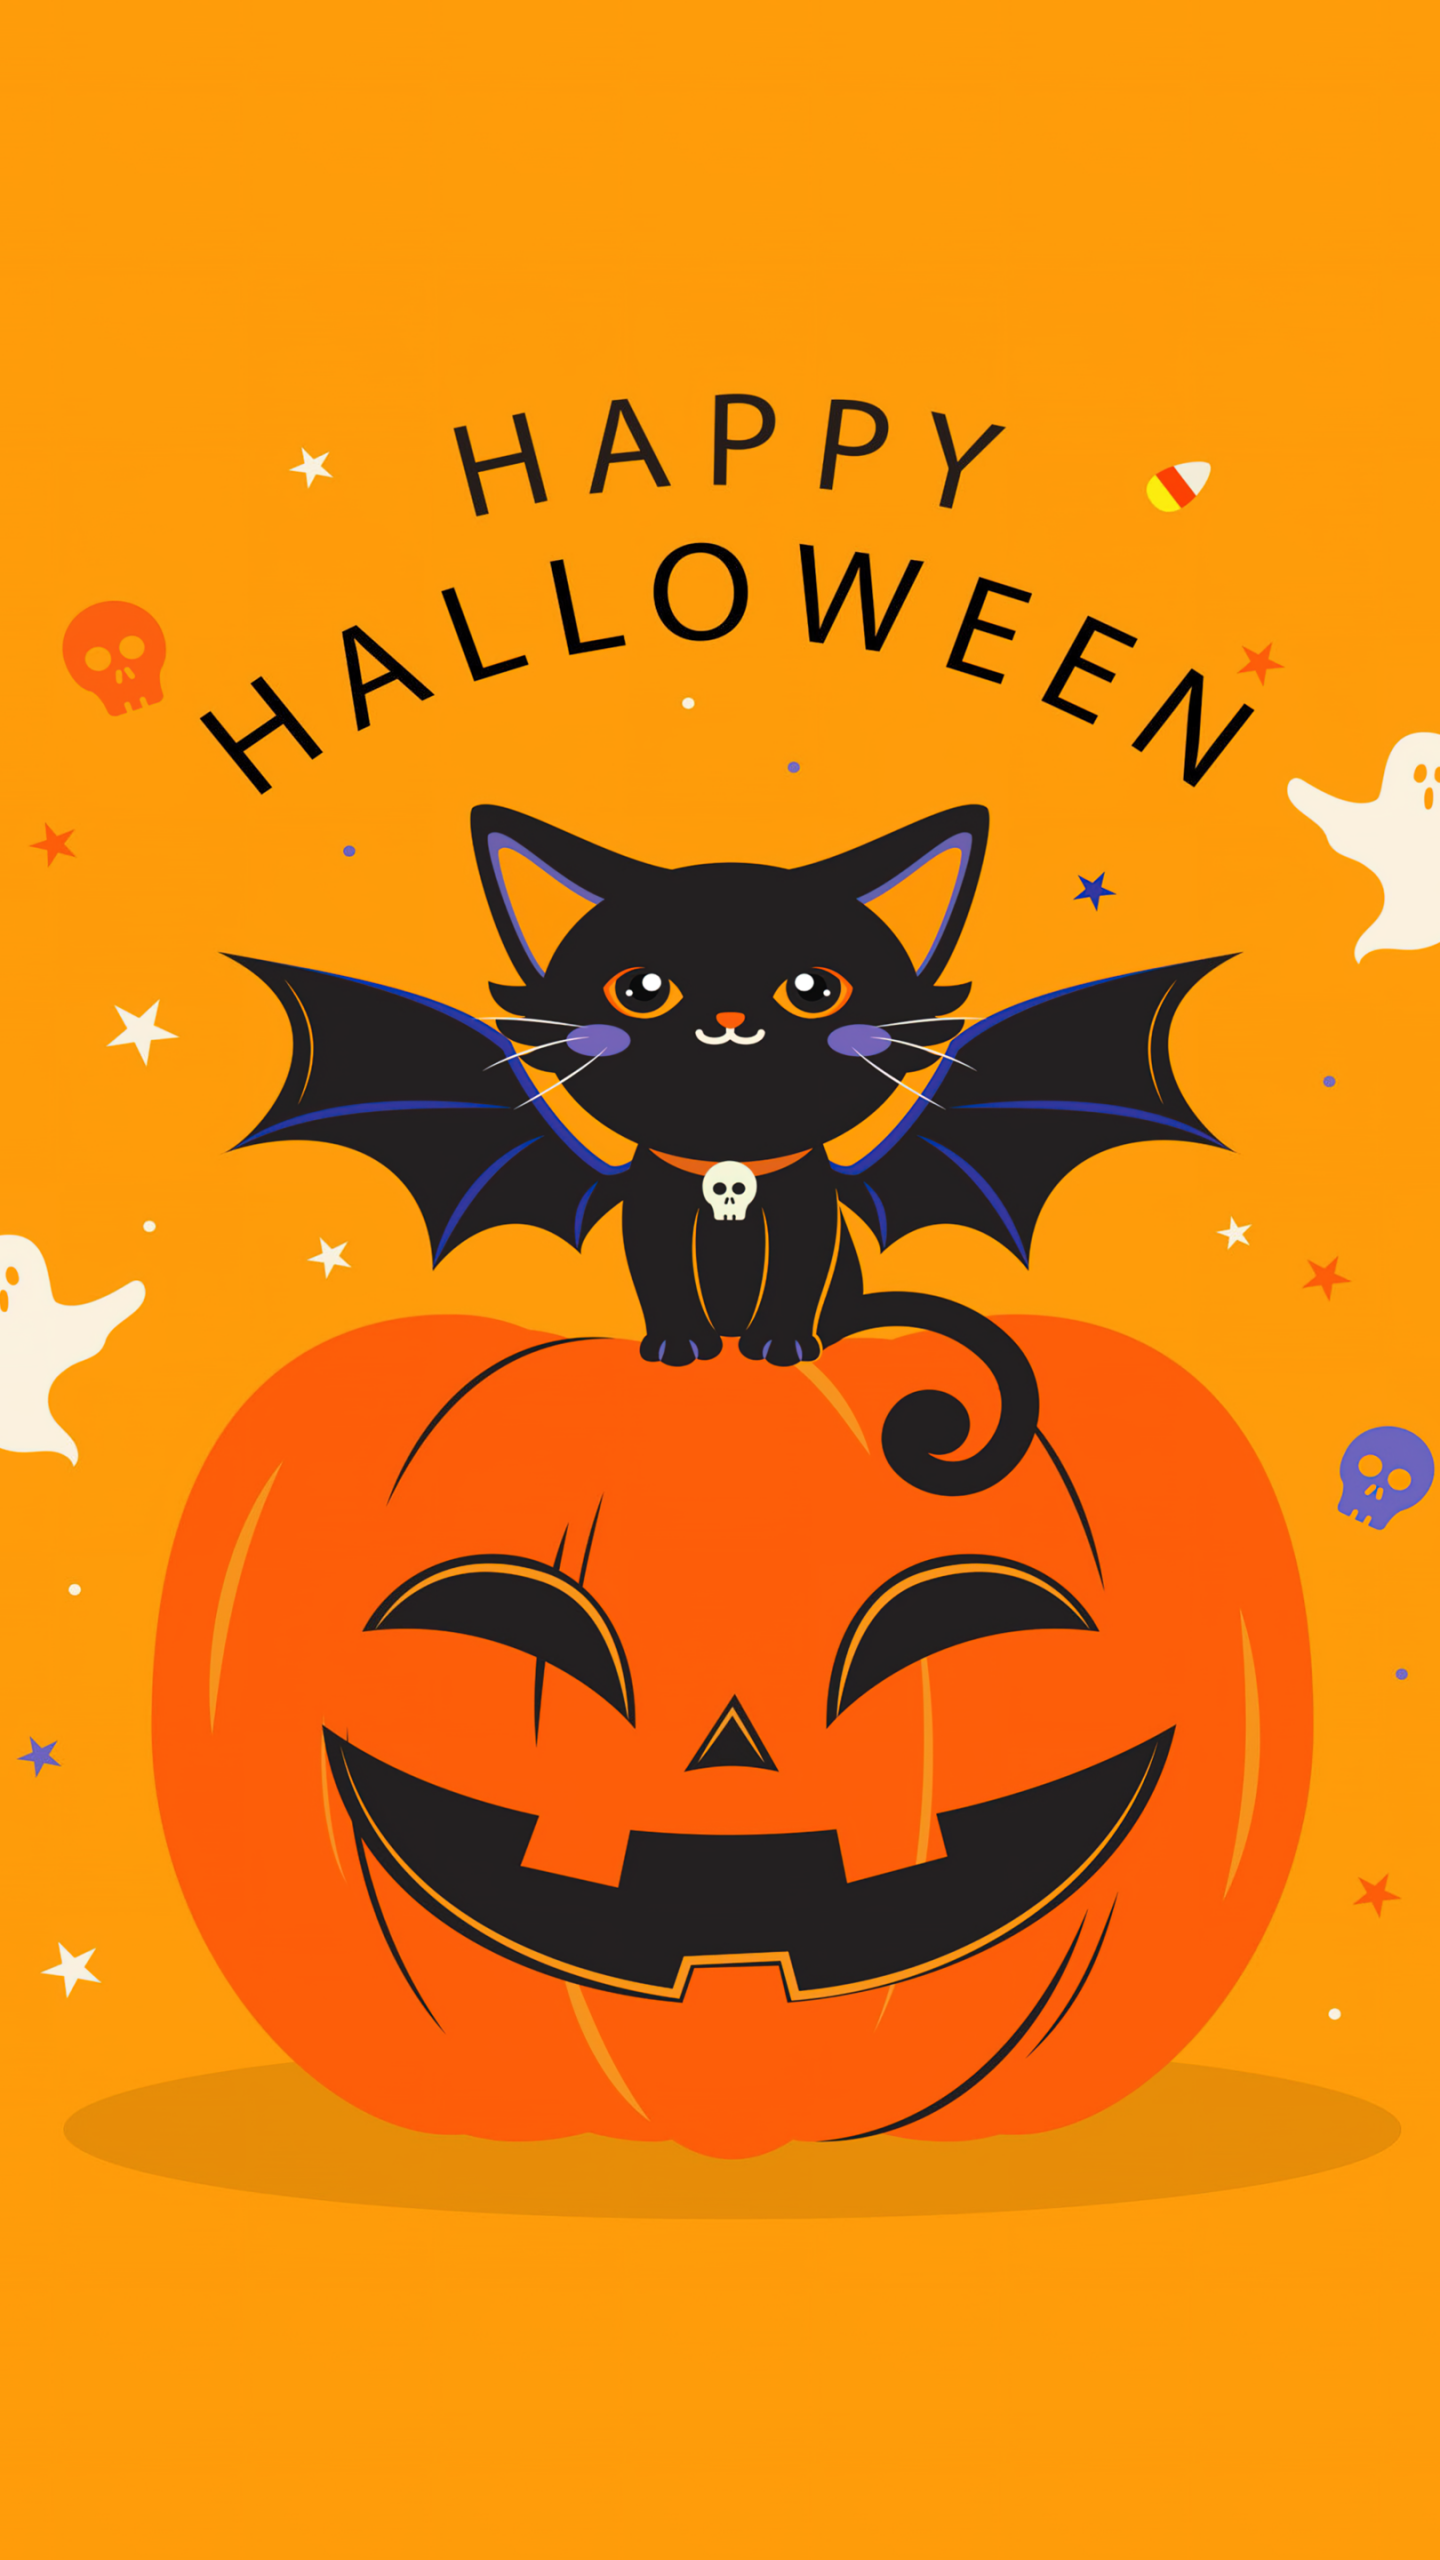 82154 Cute Halloween Wallpaper Images Stock Photos  Vectors   Shutterstock